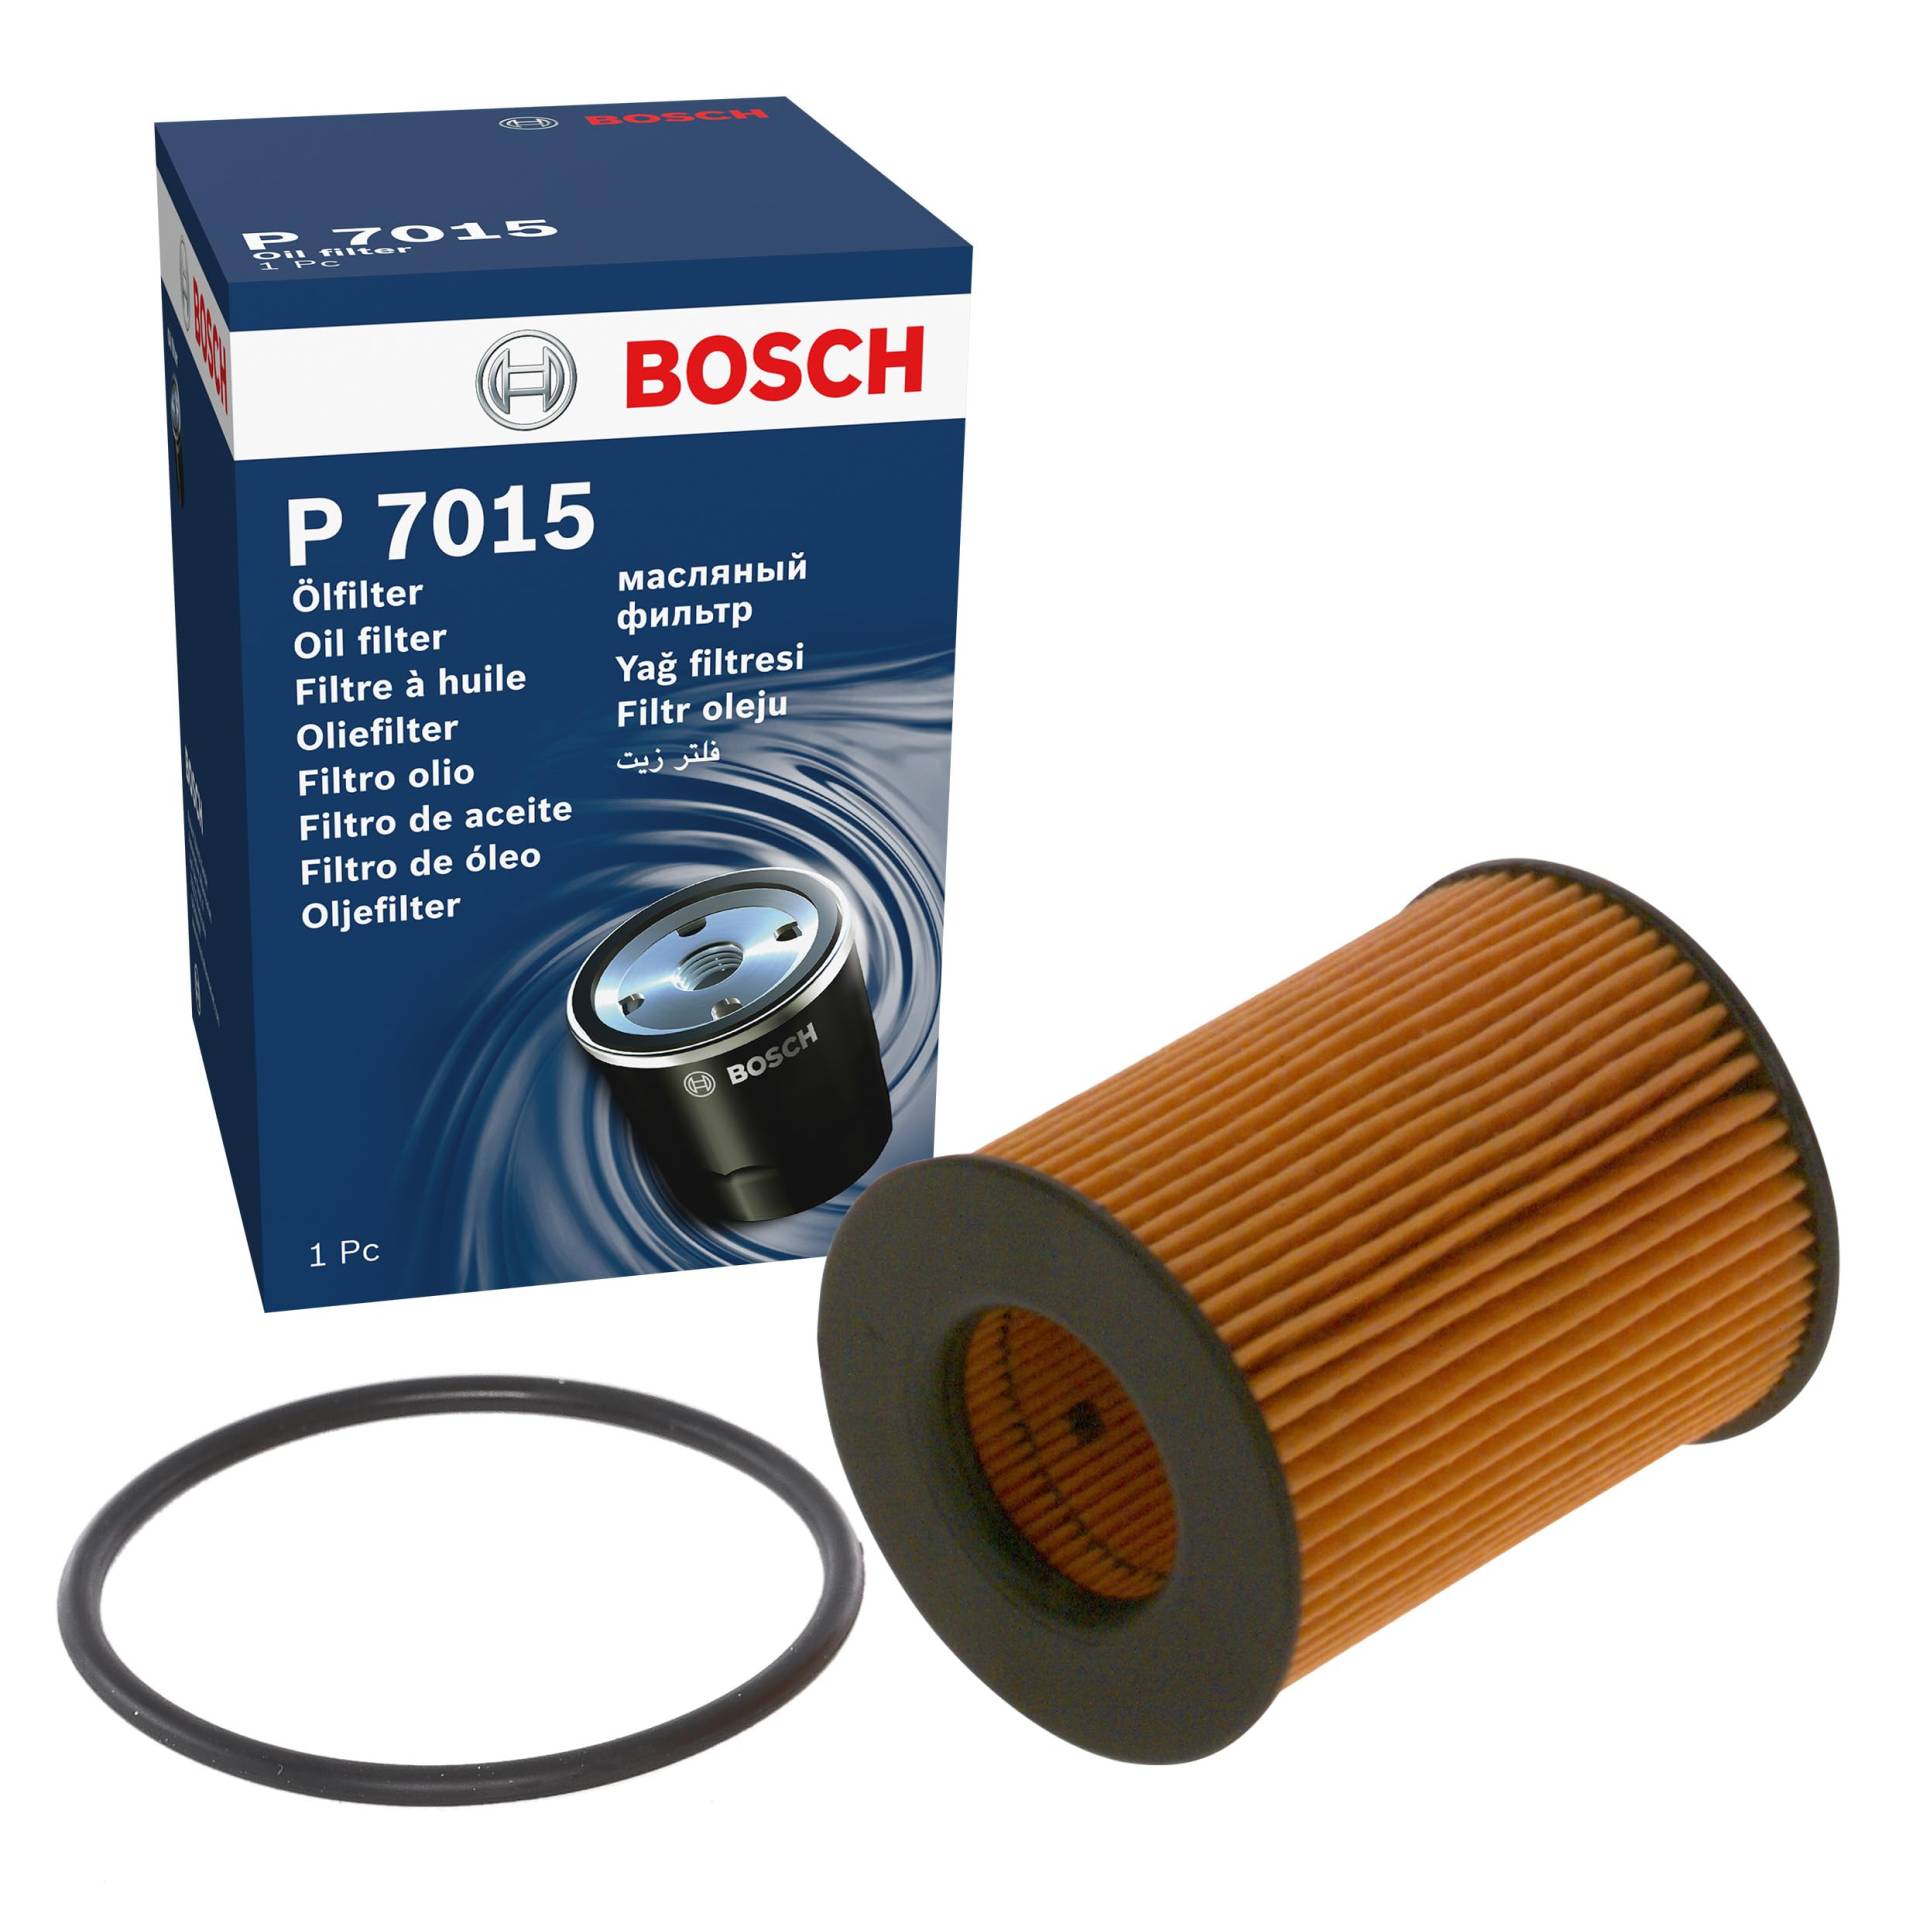 Bosch P7015 - Ölfilter Auto von Bosch Automotive